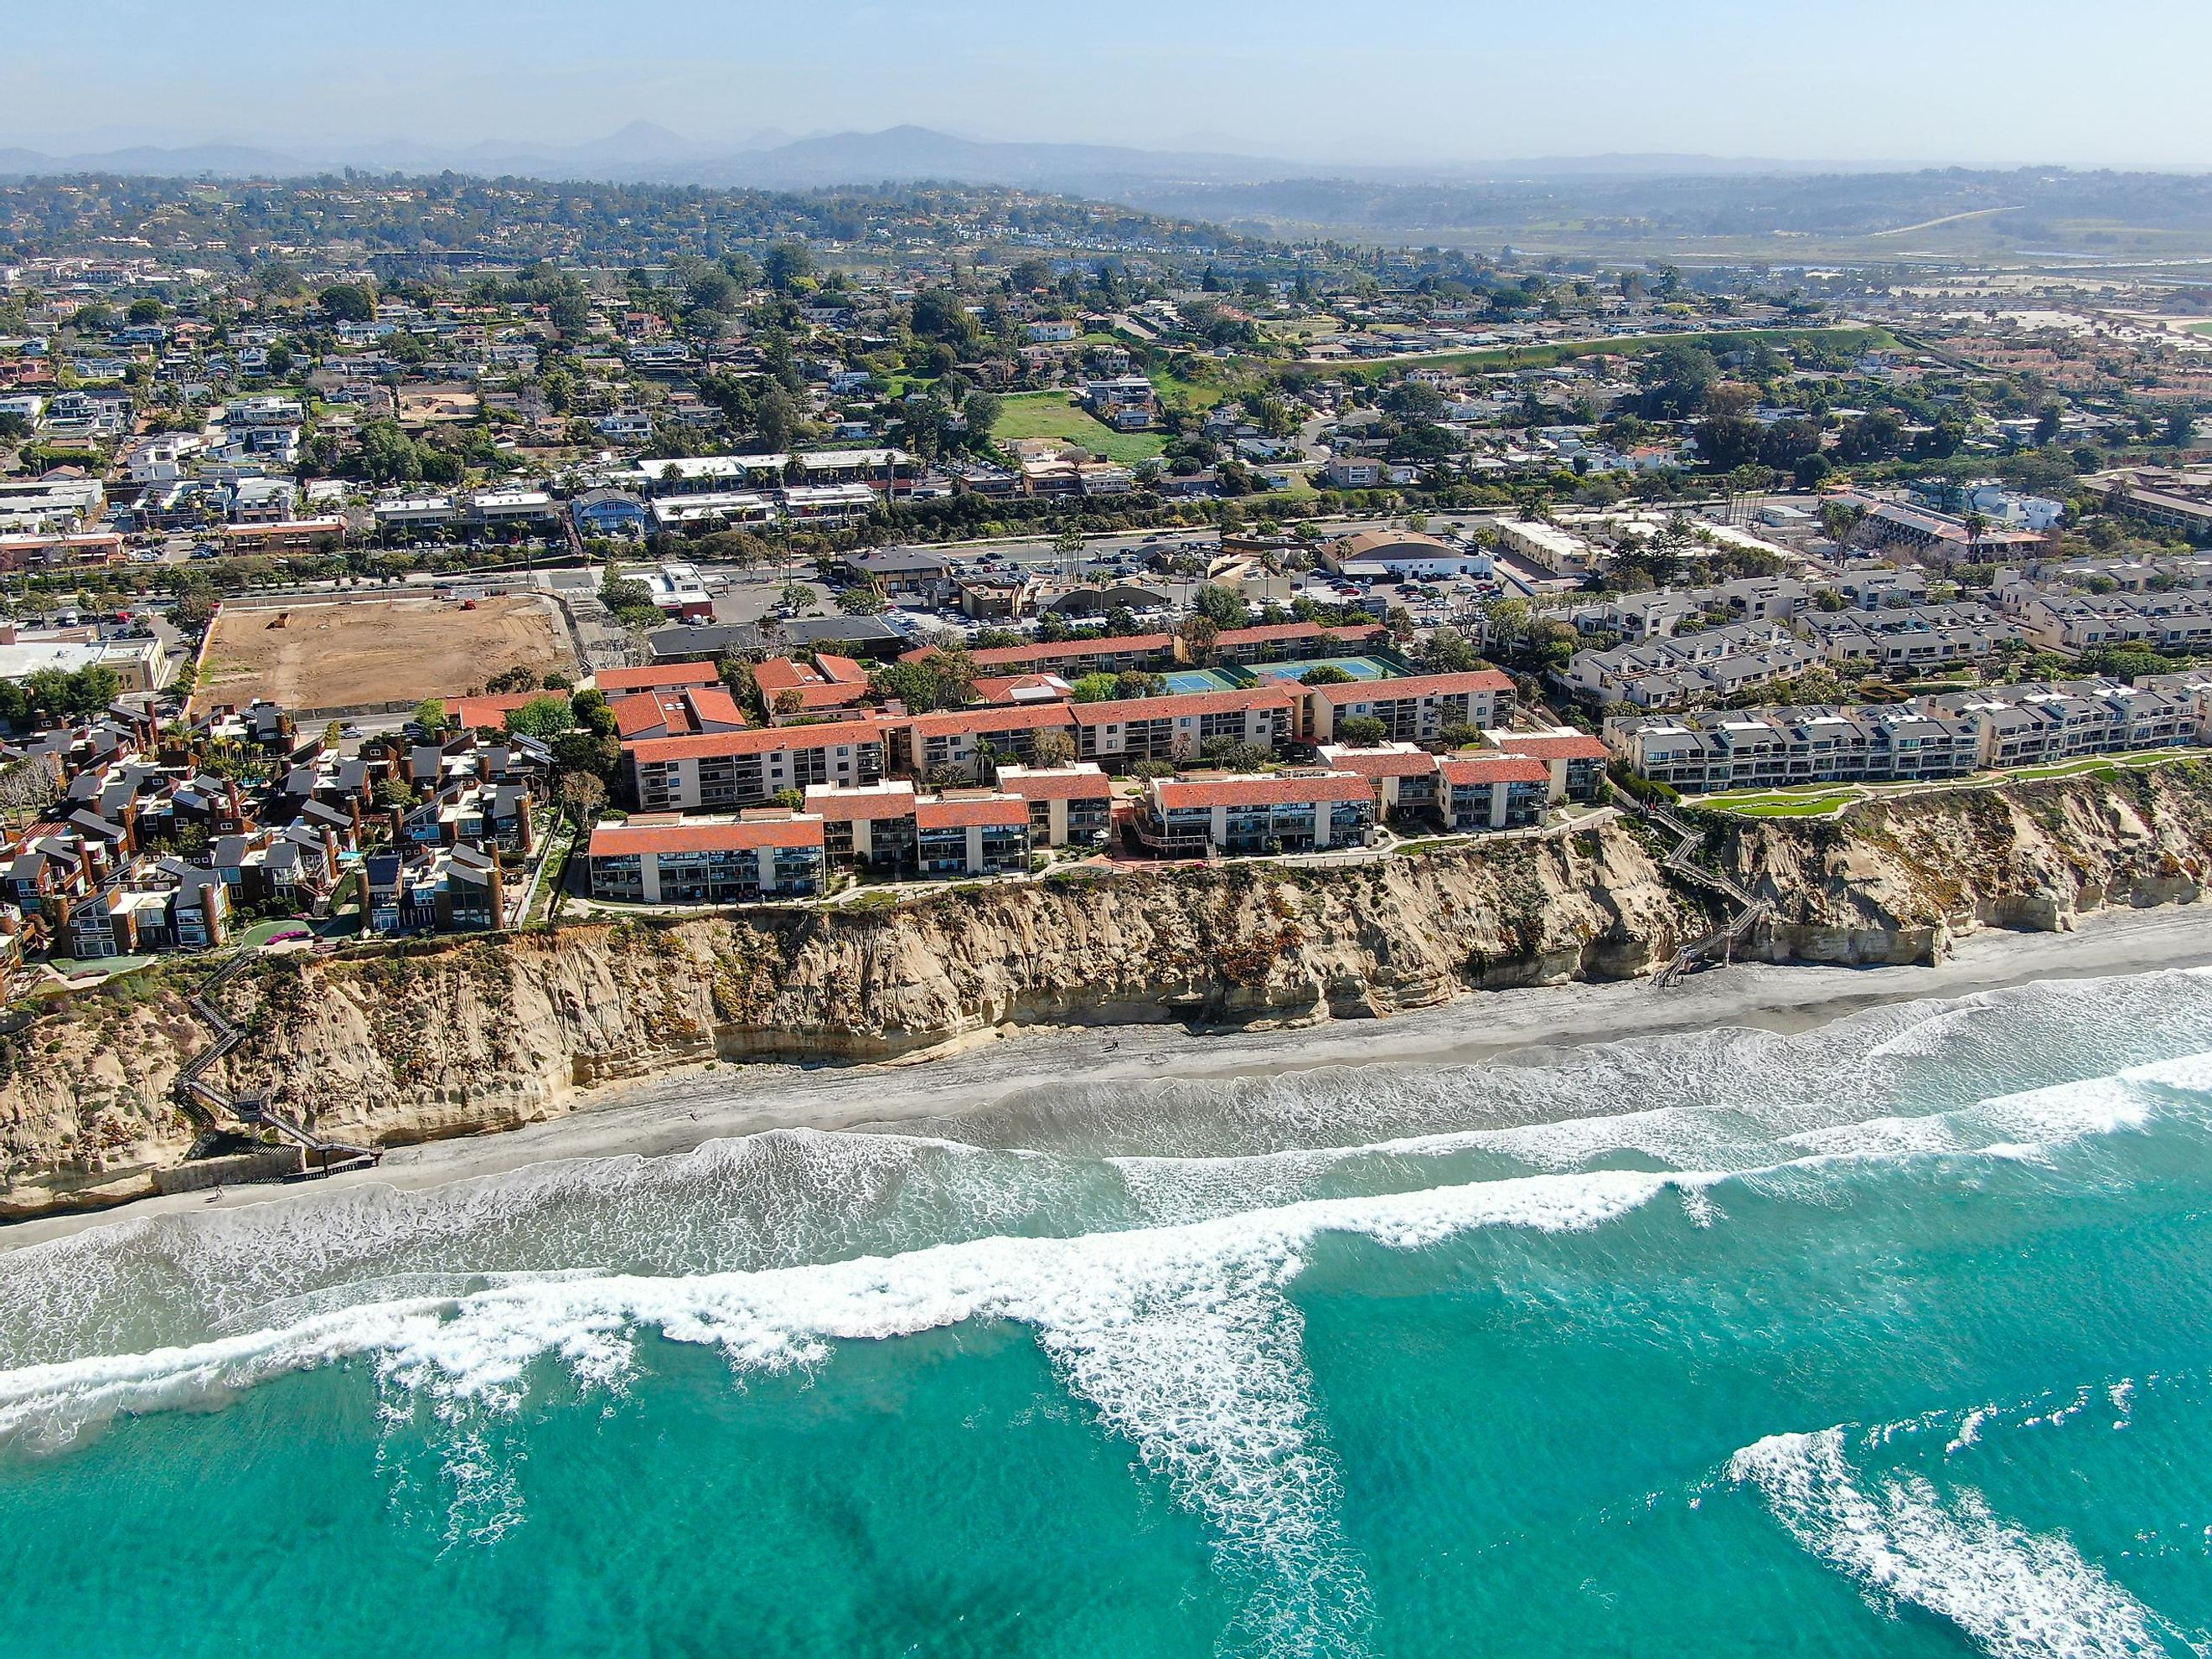 Aerial view of Solana Beach, California.